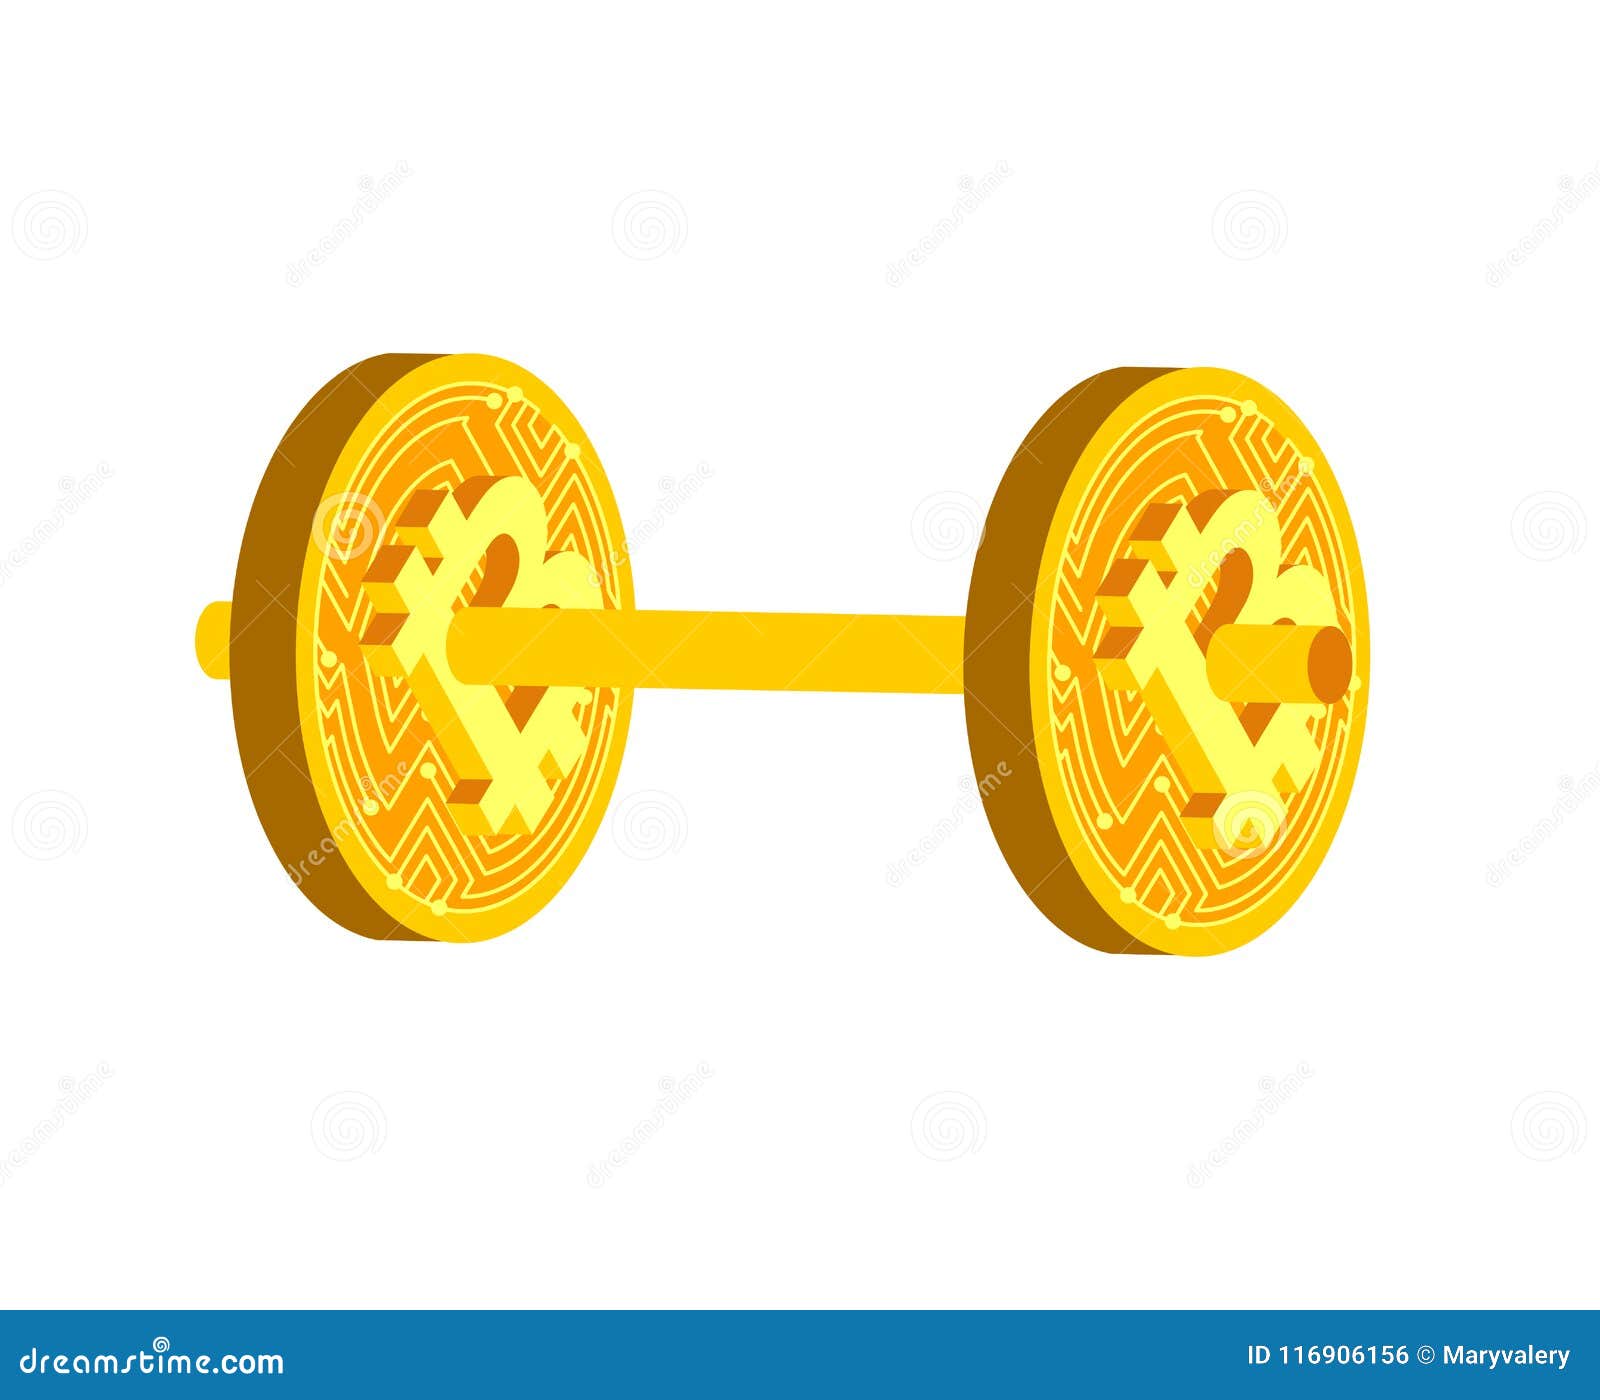 Bitcoin: valore in tempo reale e grafico aggiornato | giuseppeverdimaddaloni.it